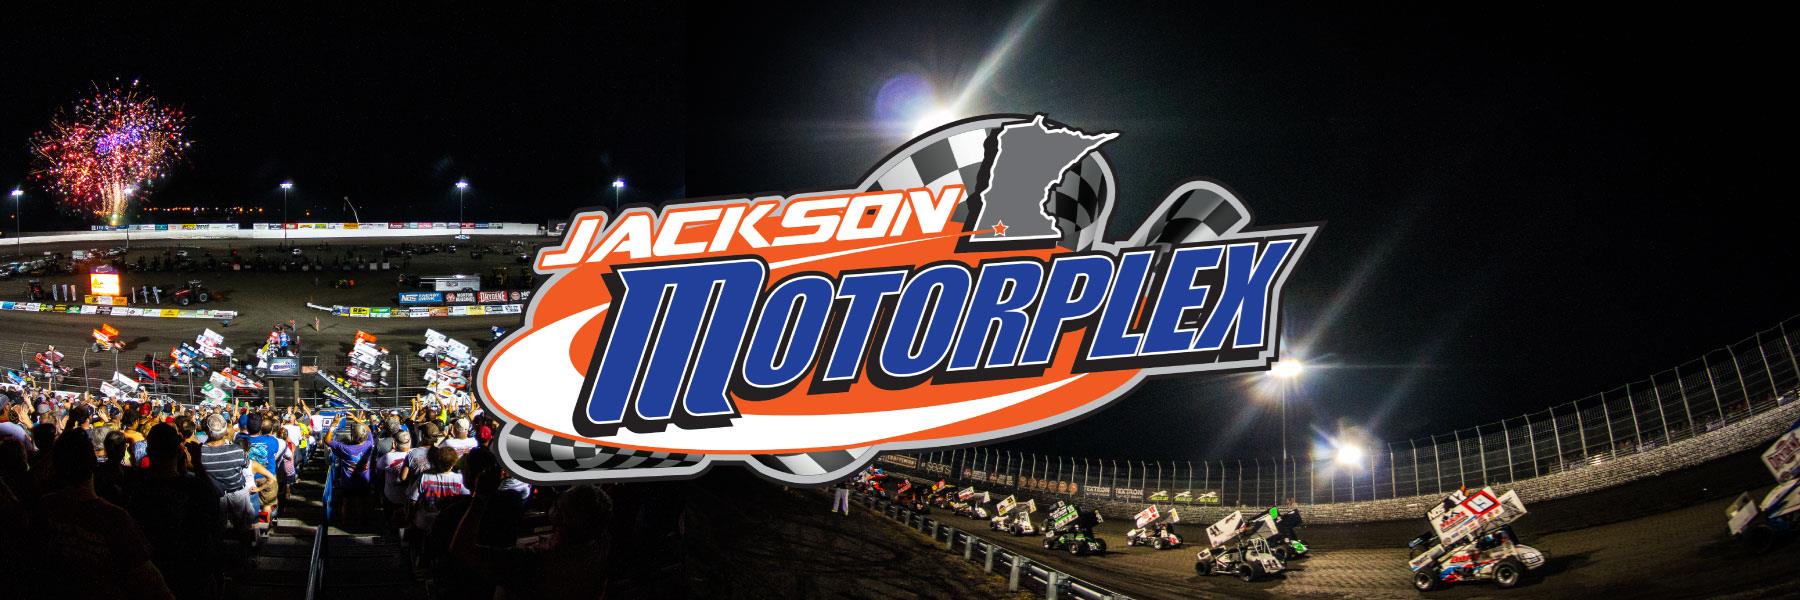 7/20/2013 - Jackson Motorplex